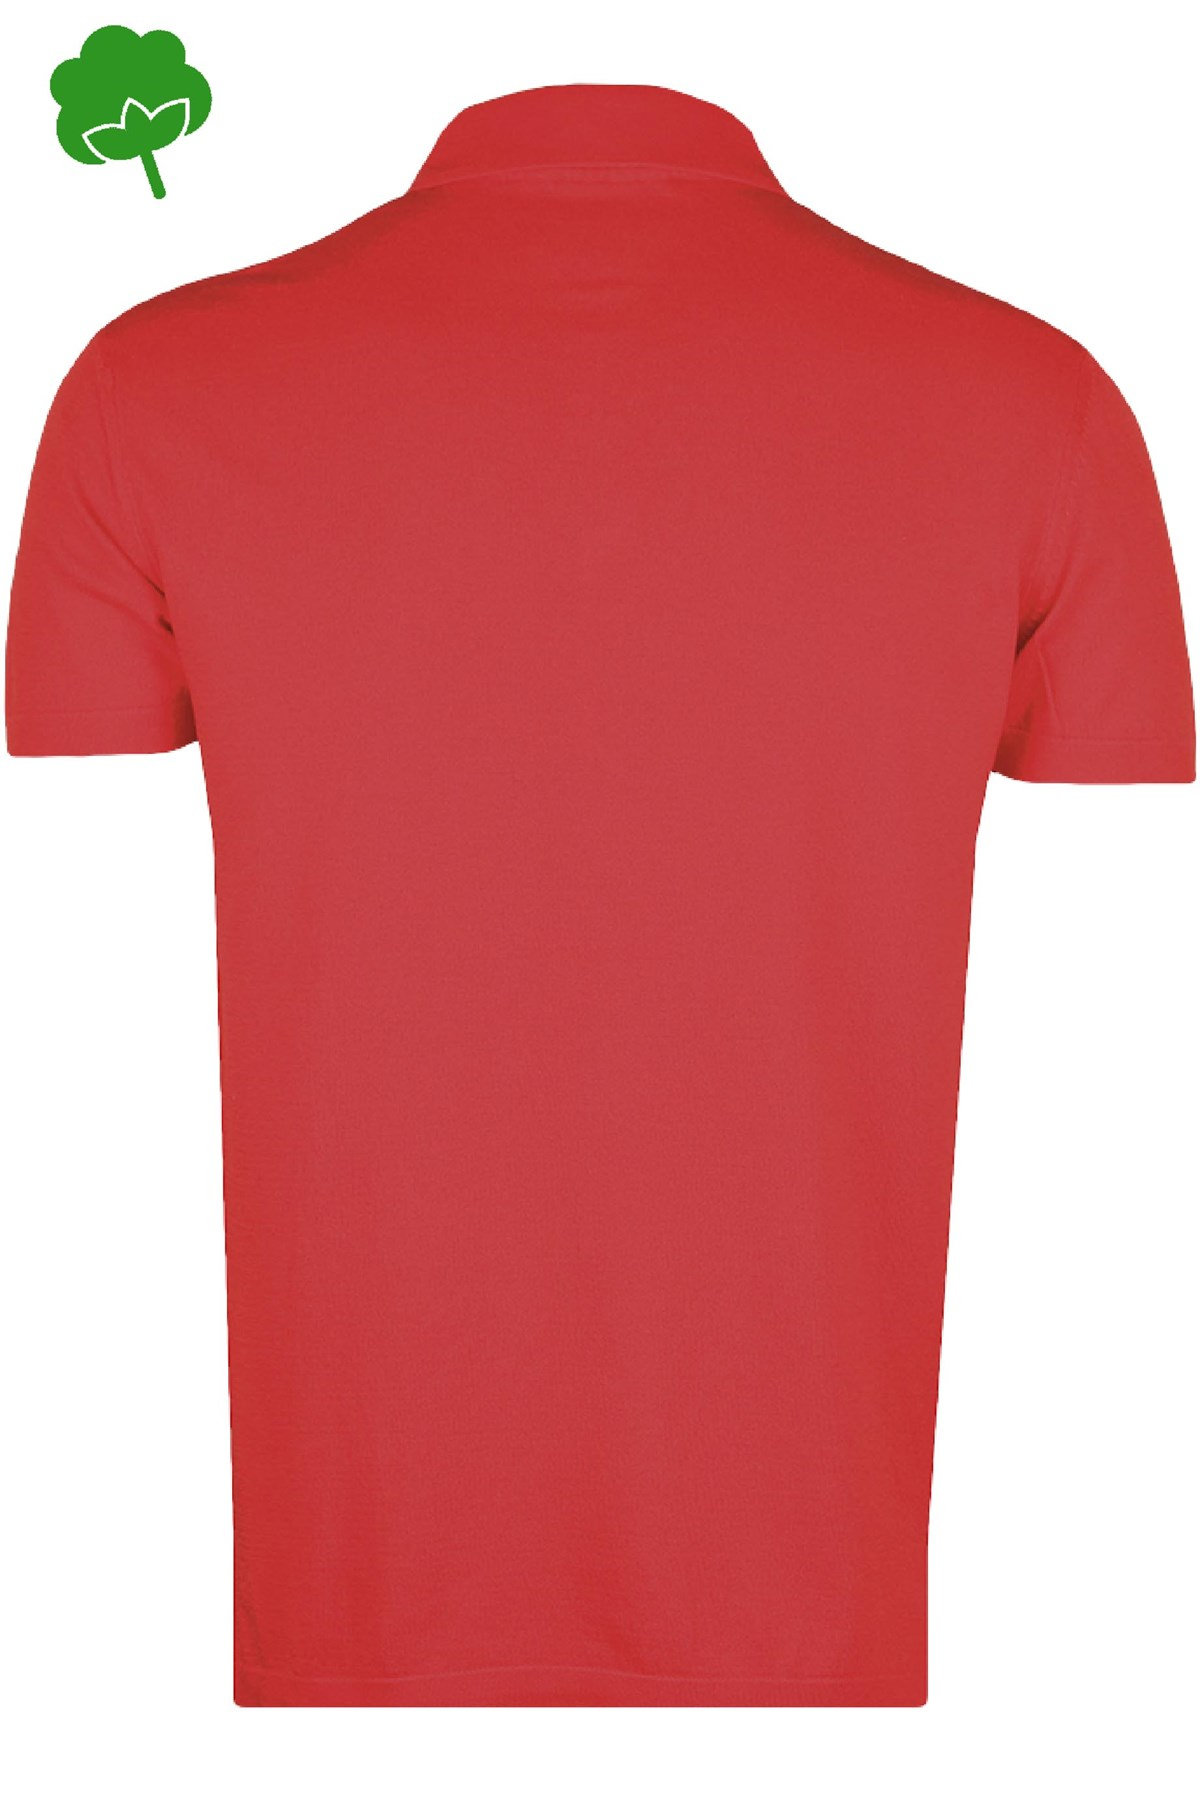 HİLAL ÖRME - %100 Pamuk Kırmızı Çıtçıtlı Polo Yaka Triko Tişört